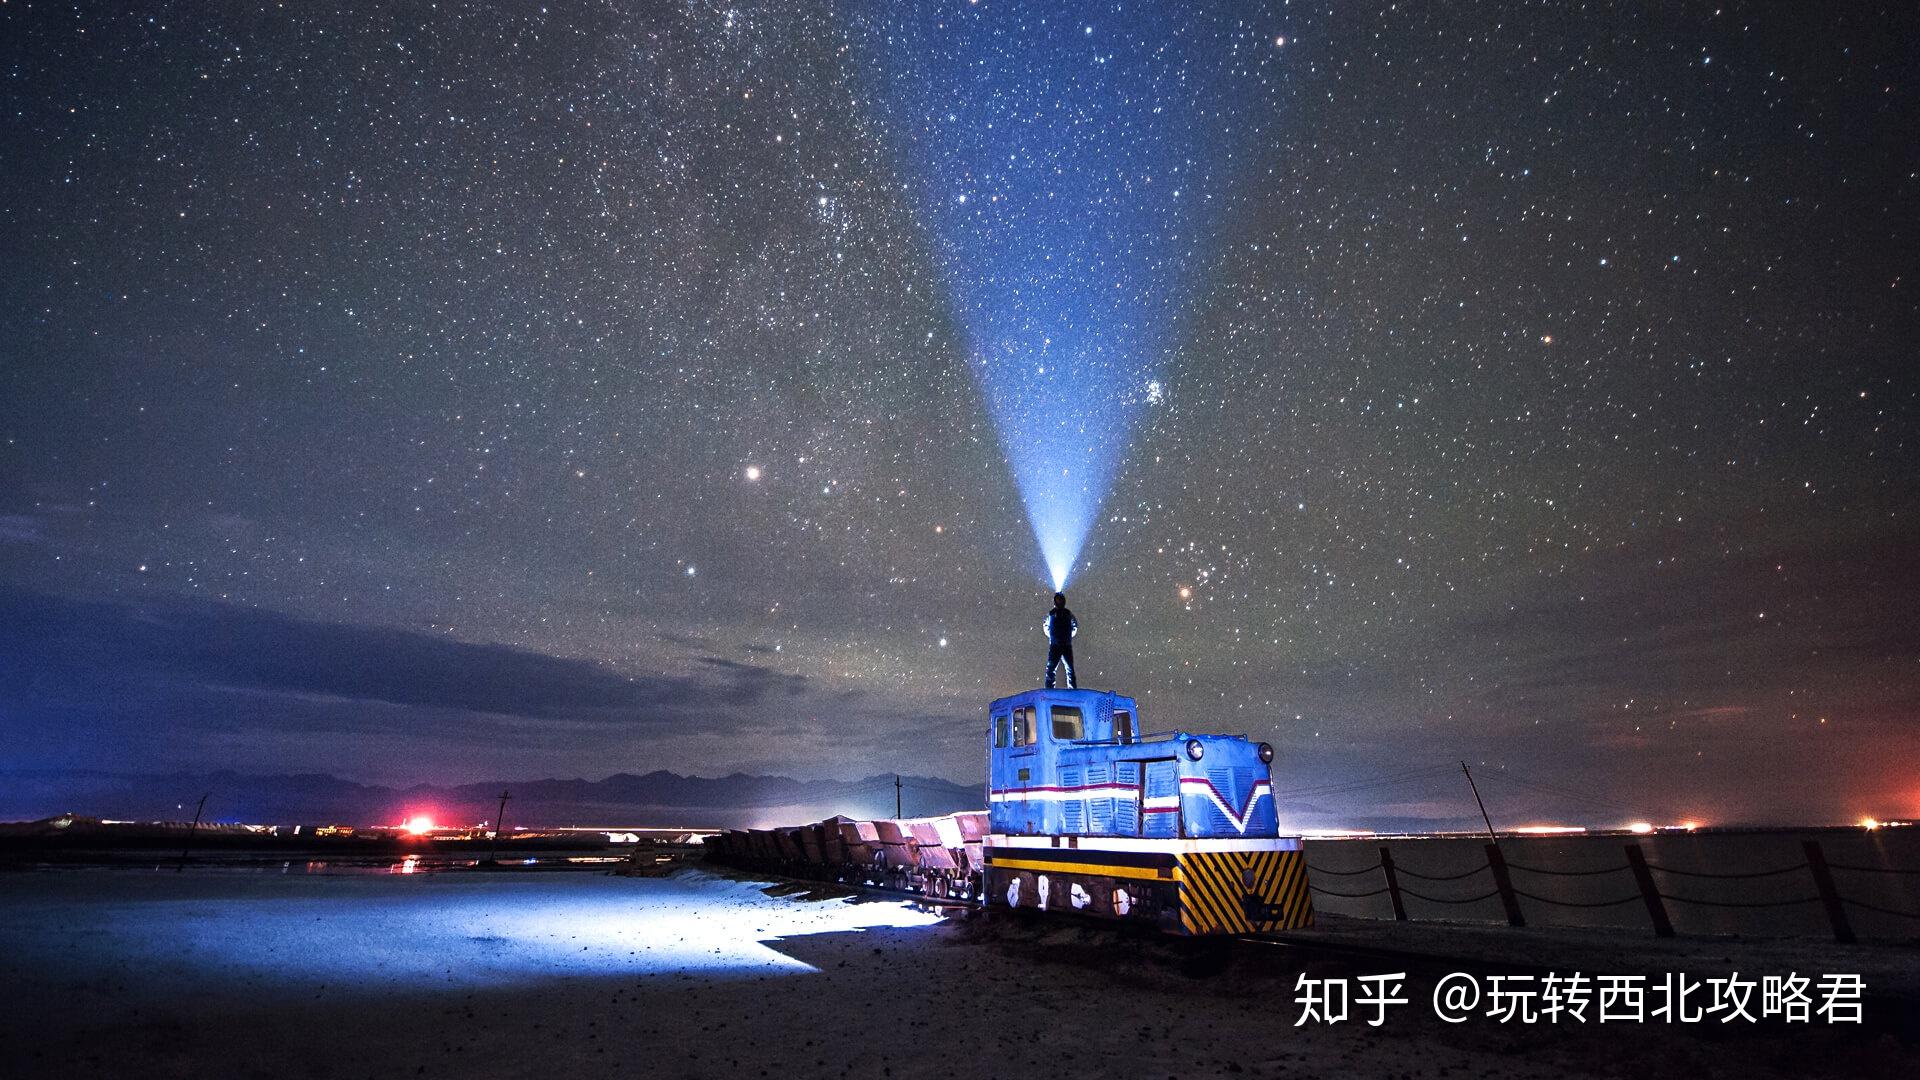 中国最美“夜空之镜”原来在茶卡盐湖 - 新闻 - 2017青海媒体行 - 华声在线专题